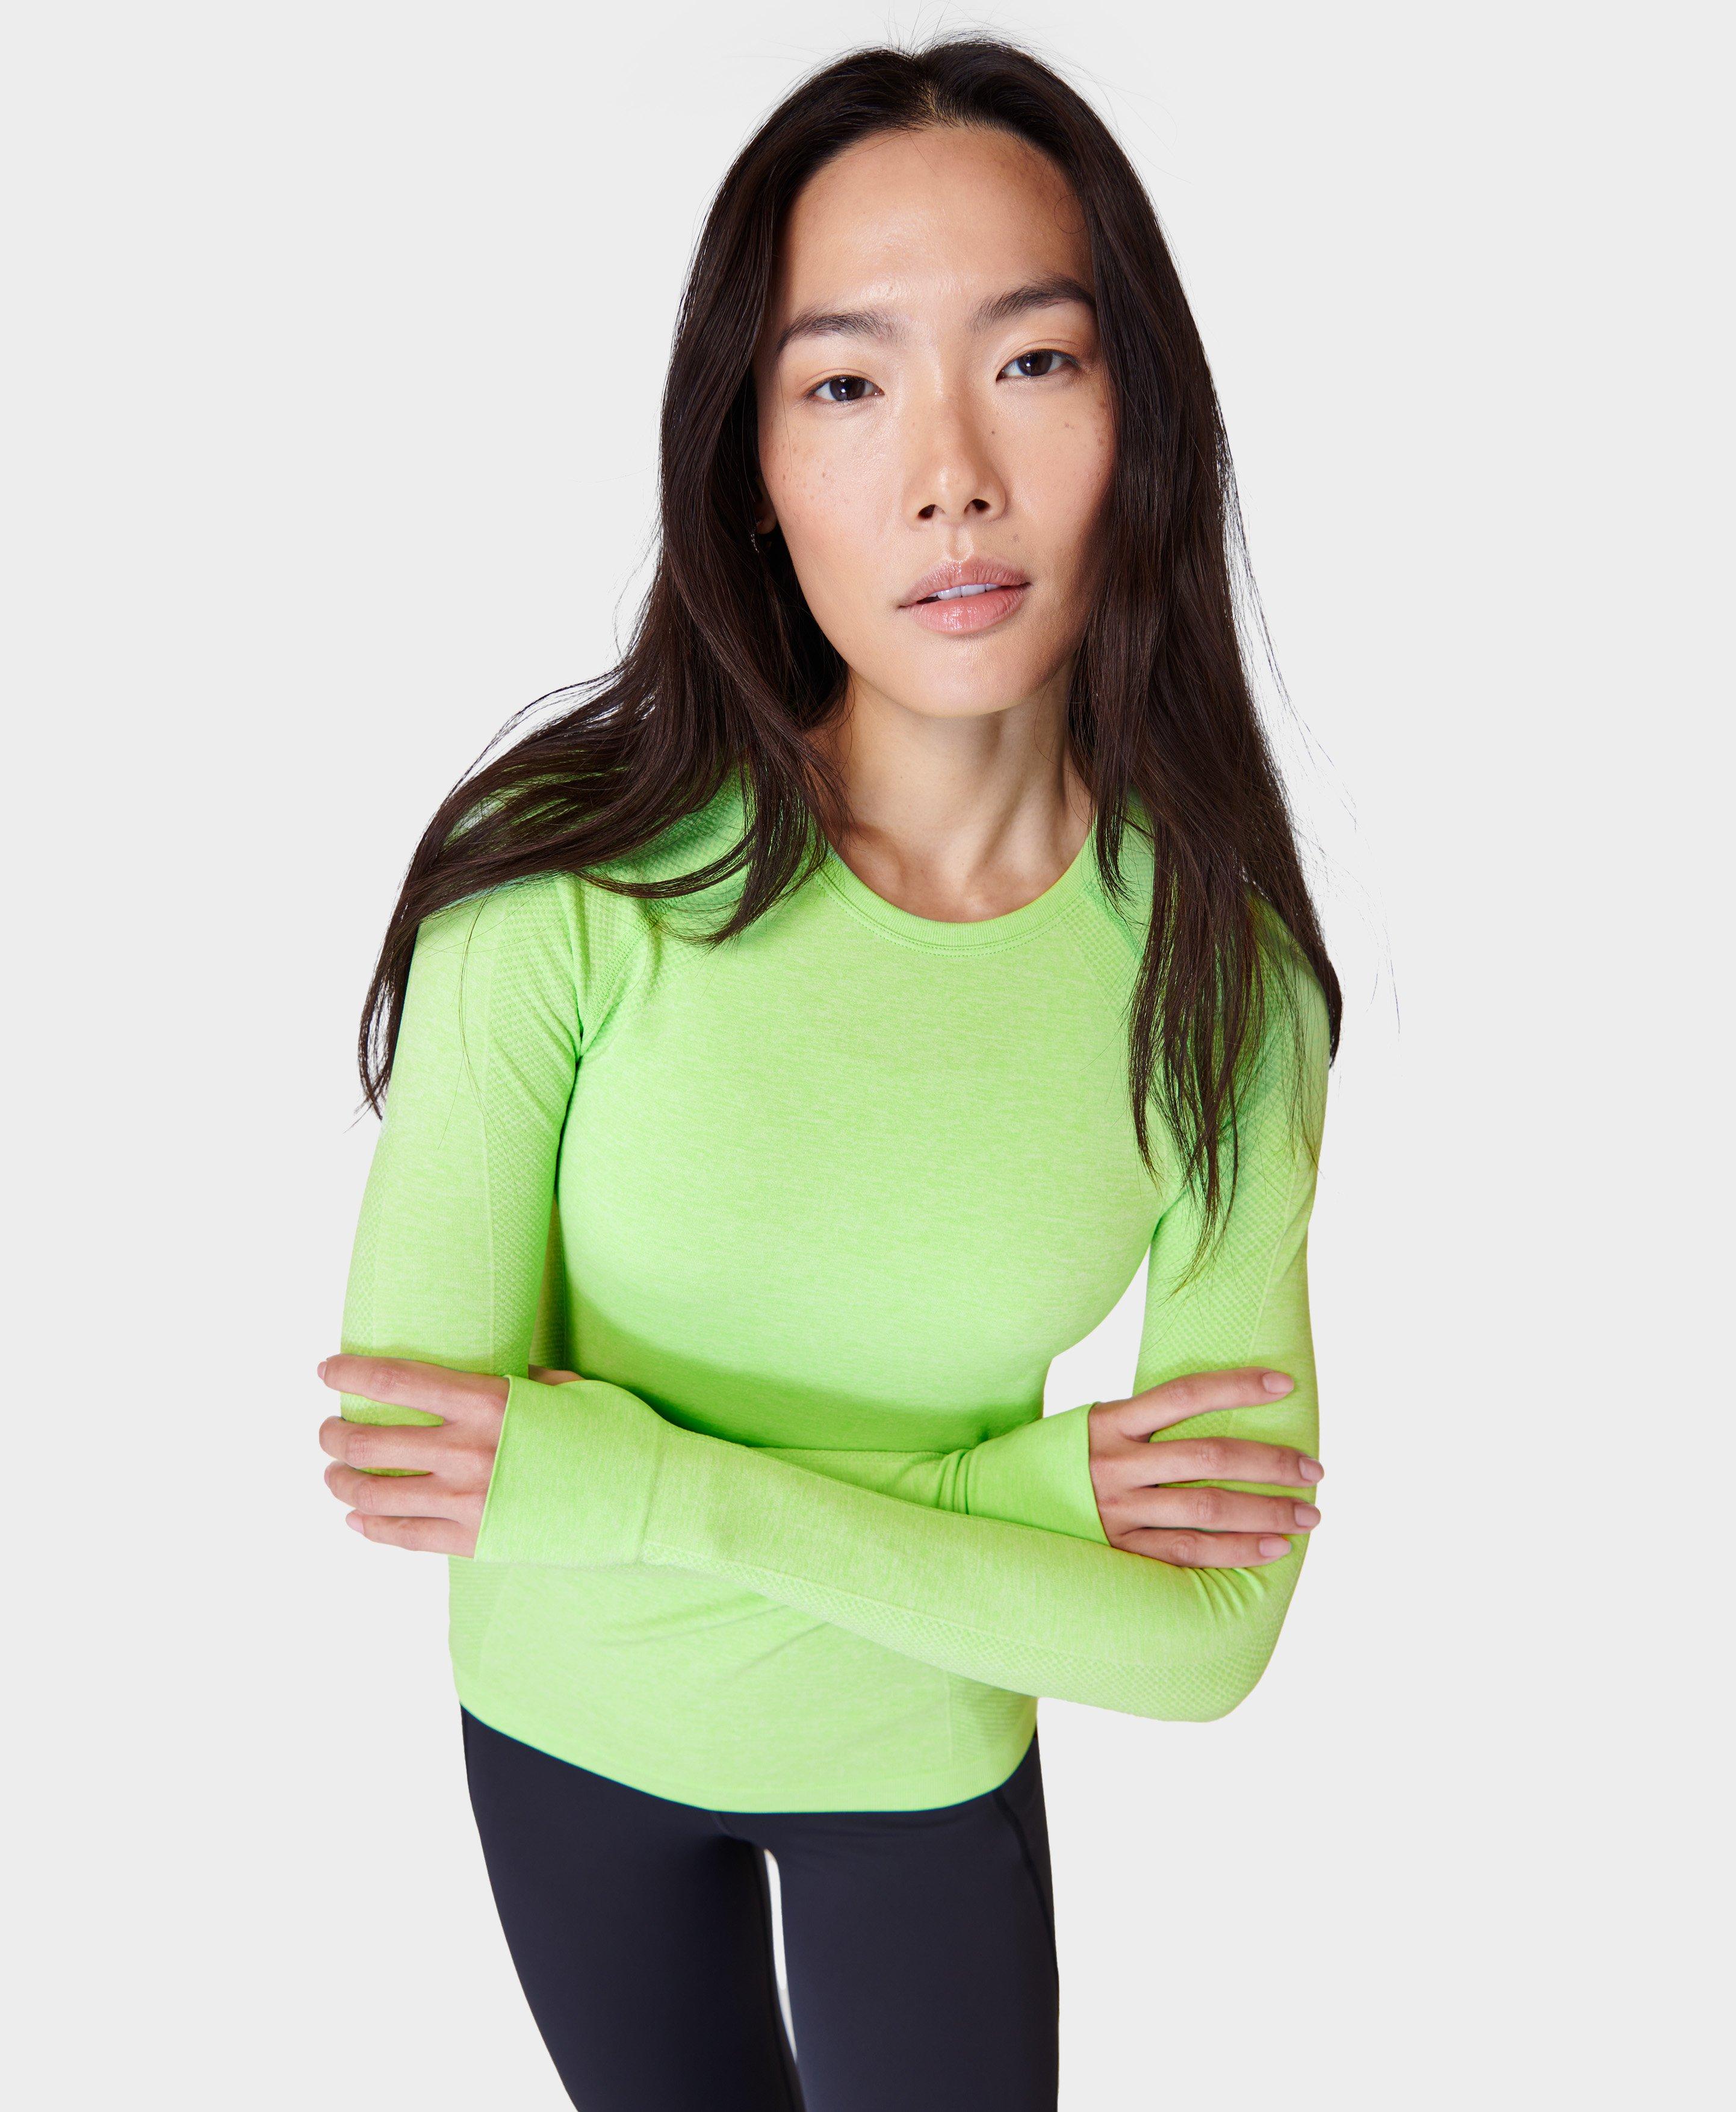 Athlete Seamless Workout Long Sleeve Top - Zest Green Marl